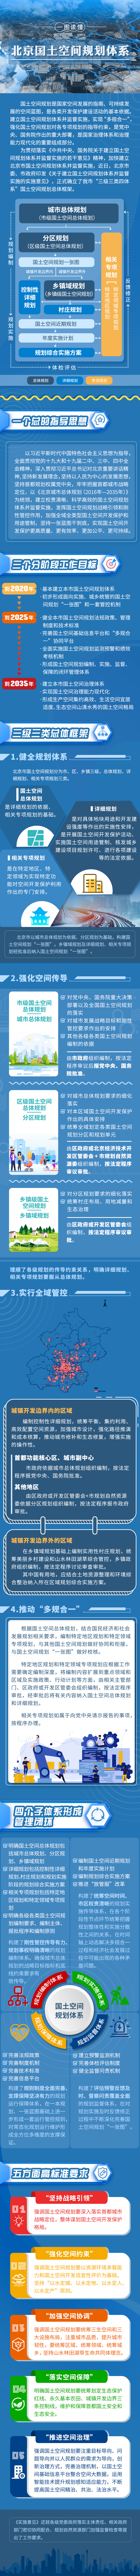 一图读懂 北京国土空间规划体系.jpg